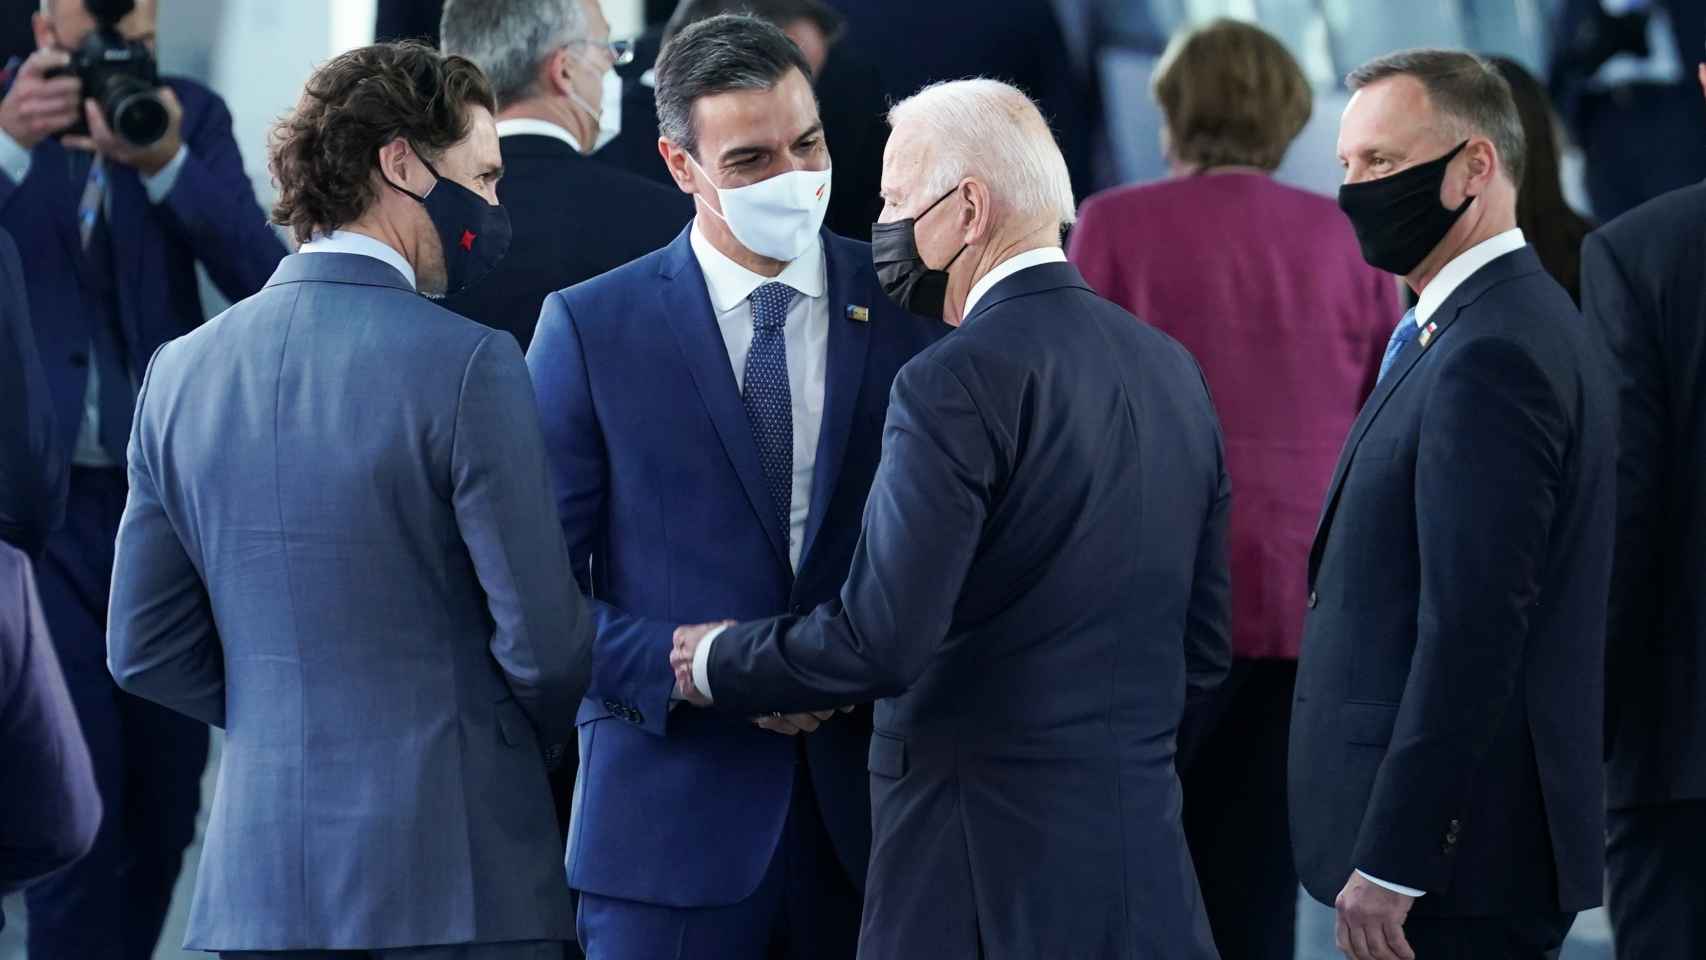 Pedro Sánchez conversa con Joe Biden y Justin Trudeau, durante la cumbre de la OTAN 2021 en Bruselas.